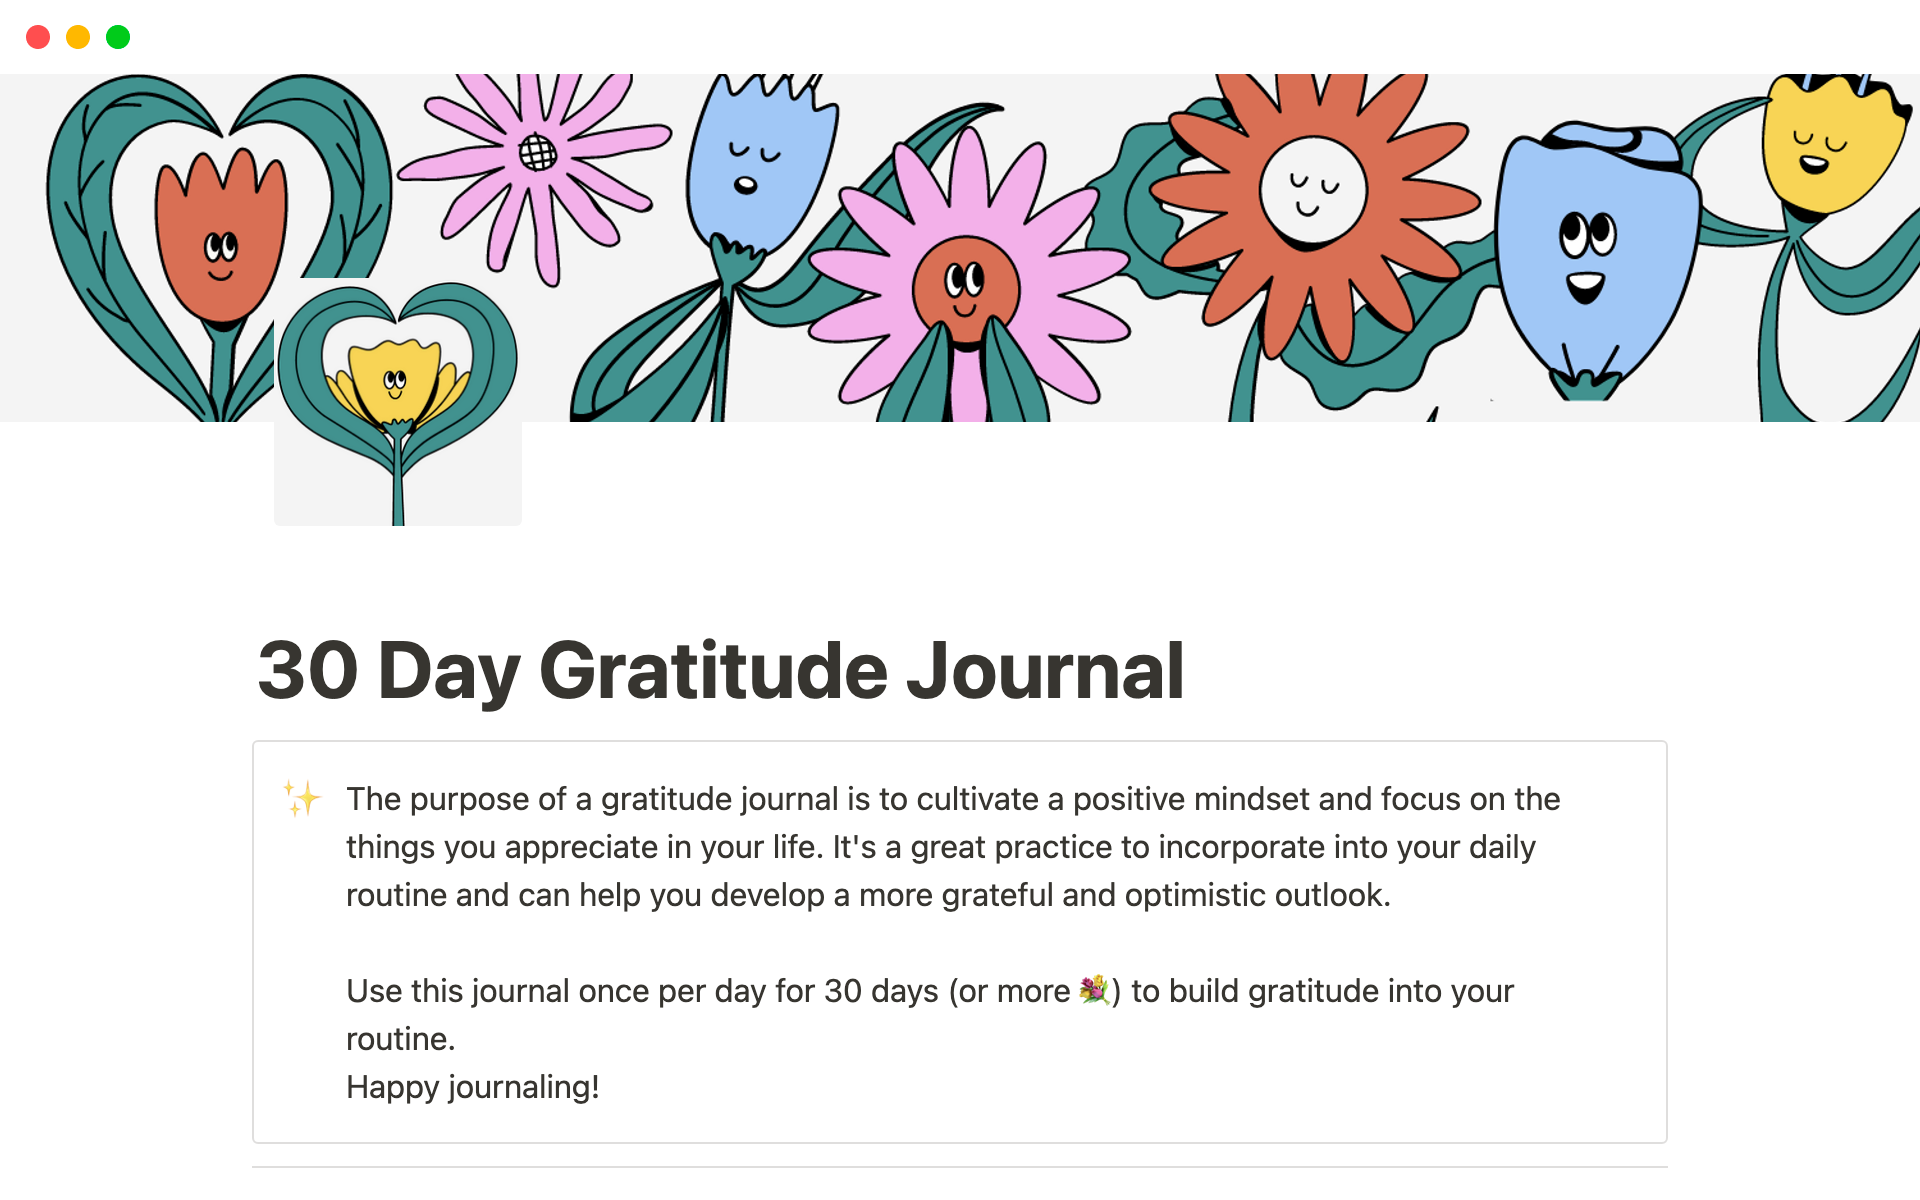 Uma prévia do modelo para 30 Day Gratitude Journal